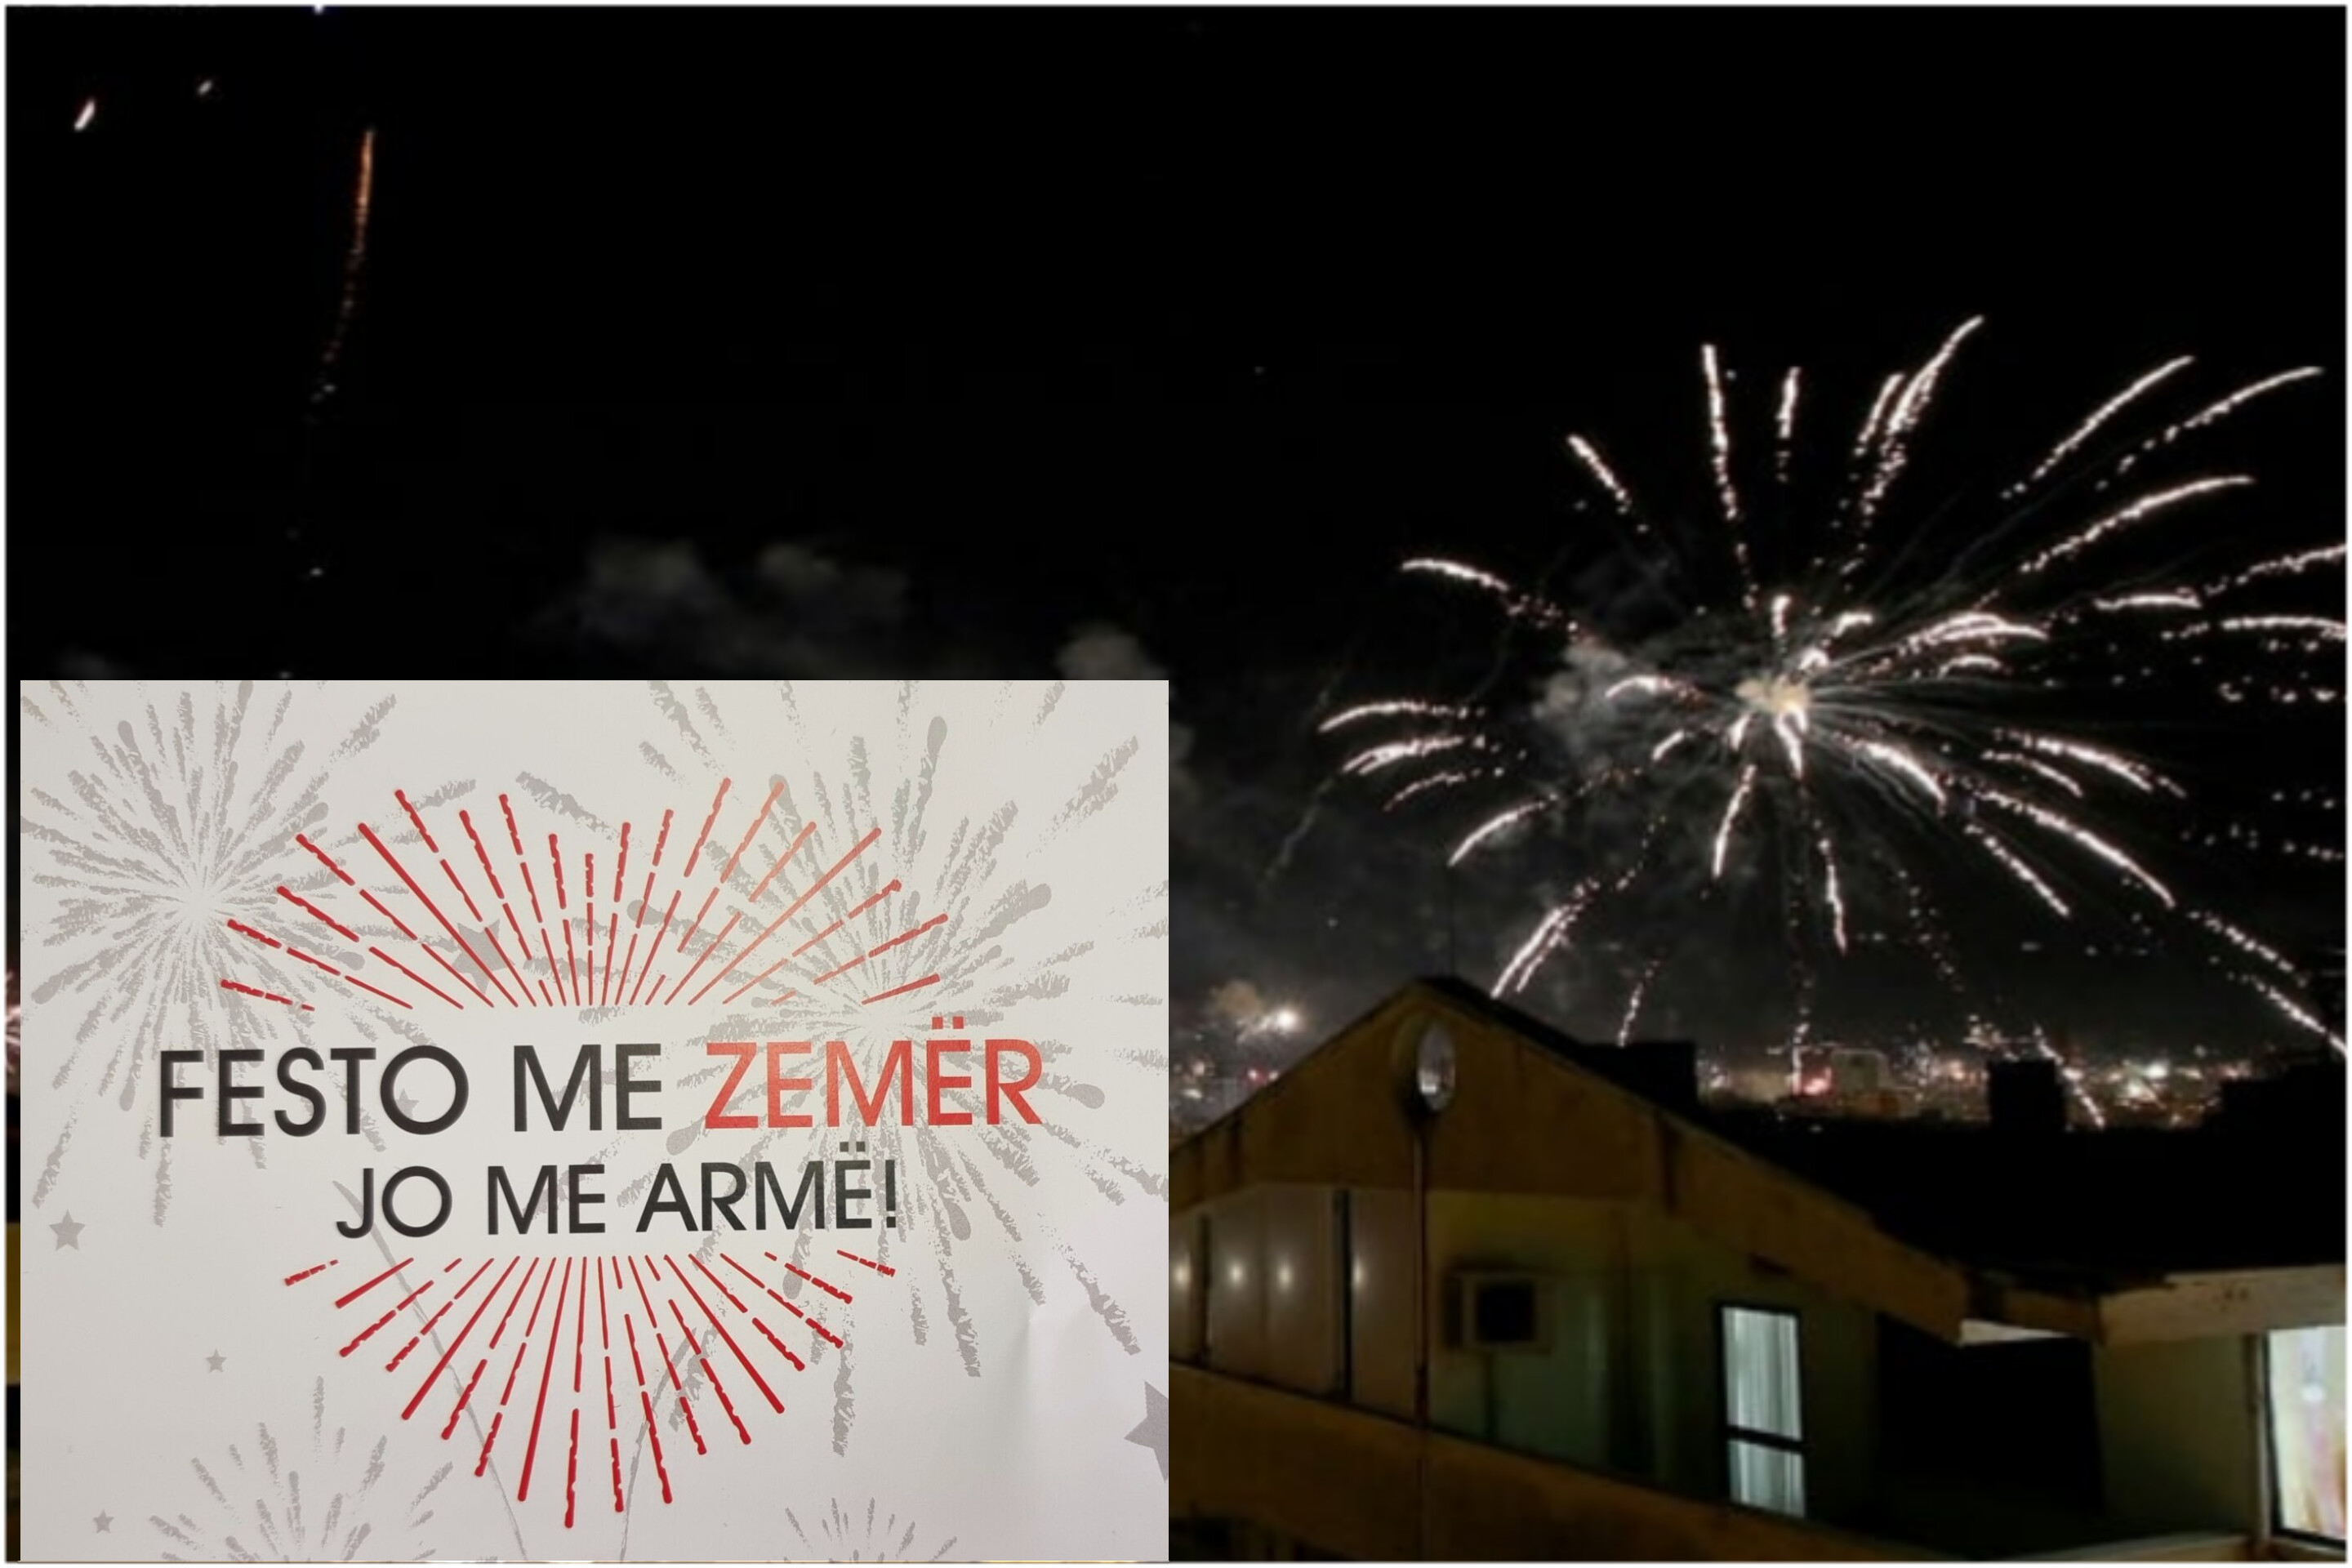 “Festo me zemër, jo me armë”, policia me apel në prag të Vitit të Ri